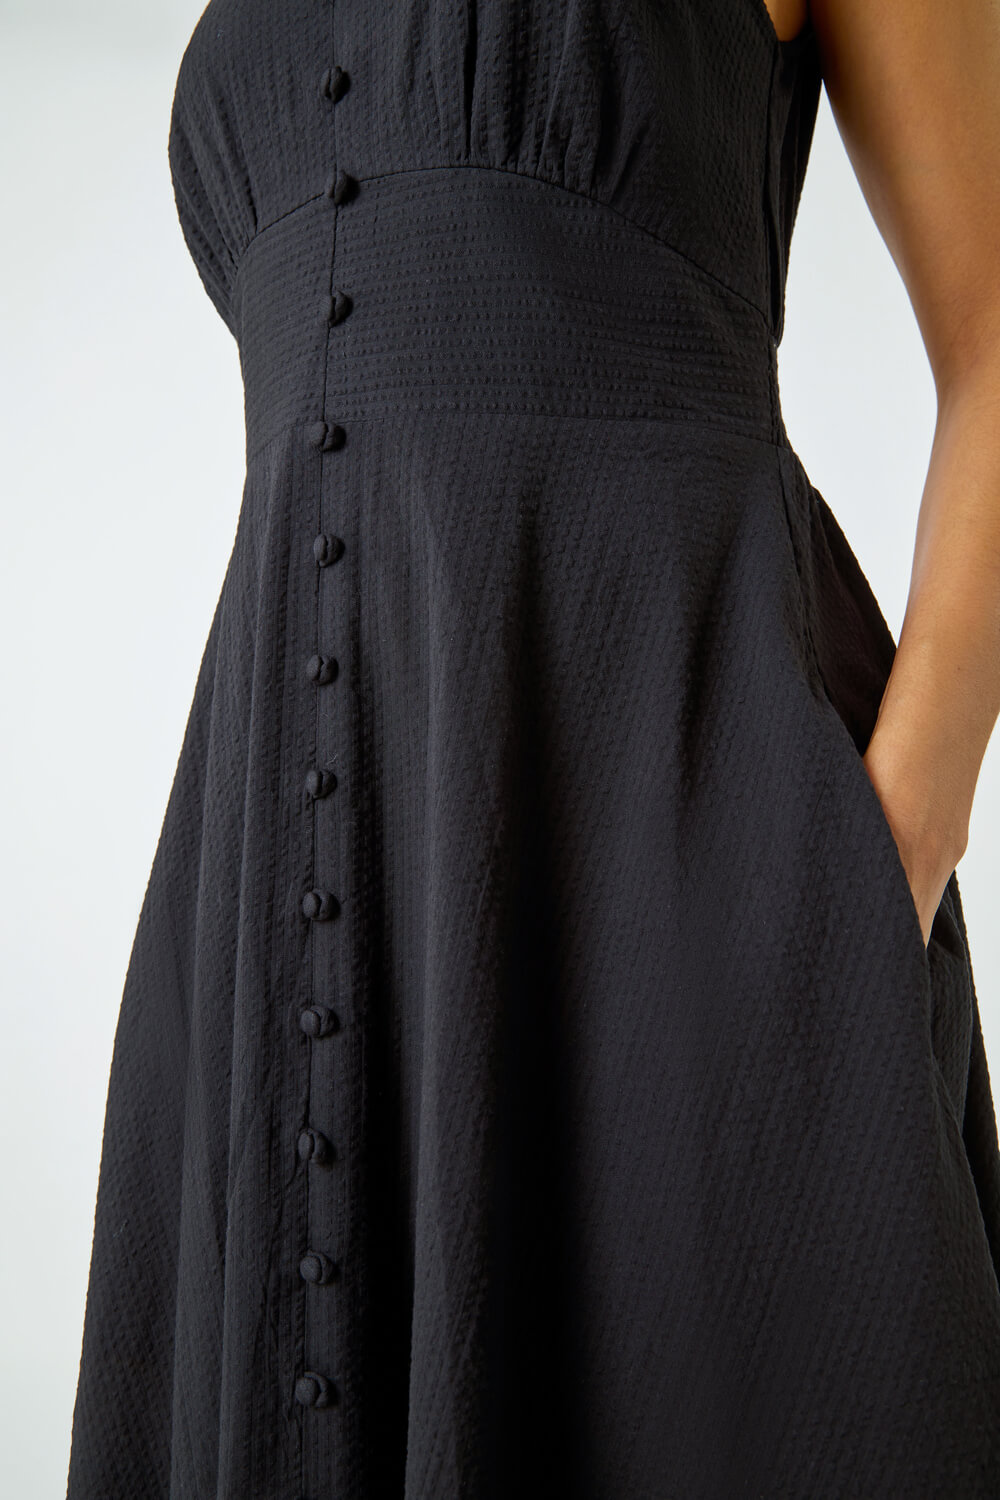 Black Sleeveless Button Detail Cotton Midi Dress, Image 5 of 5